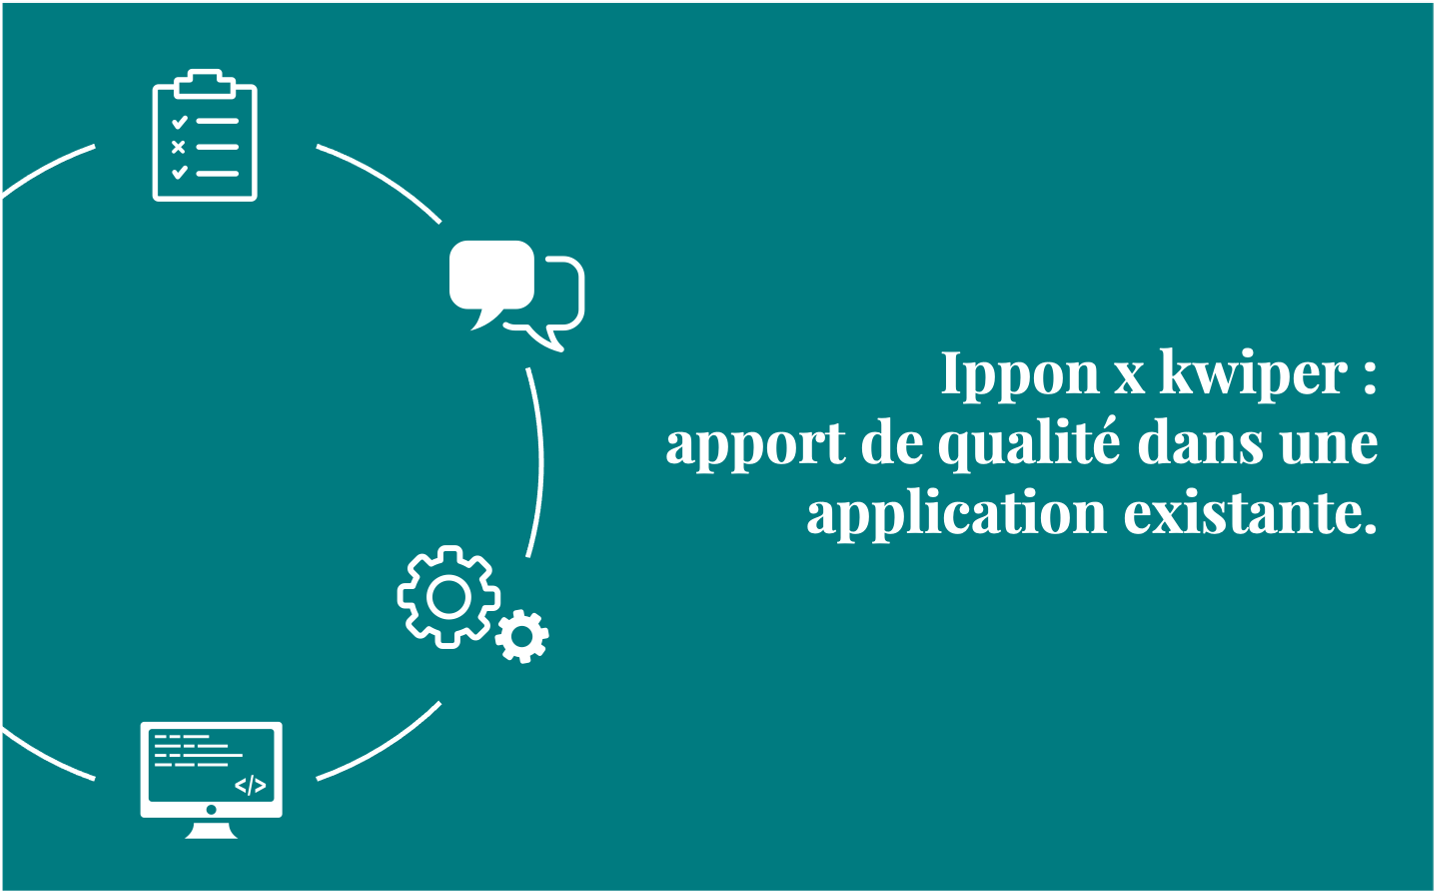 Ippon x kwiper : apport de qualité dans une application existante